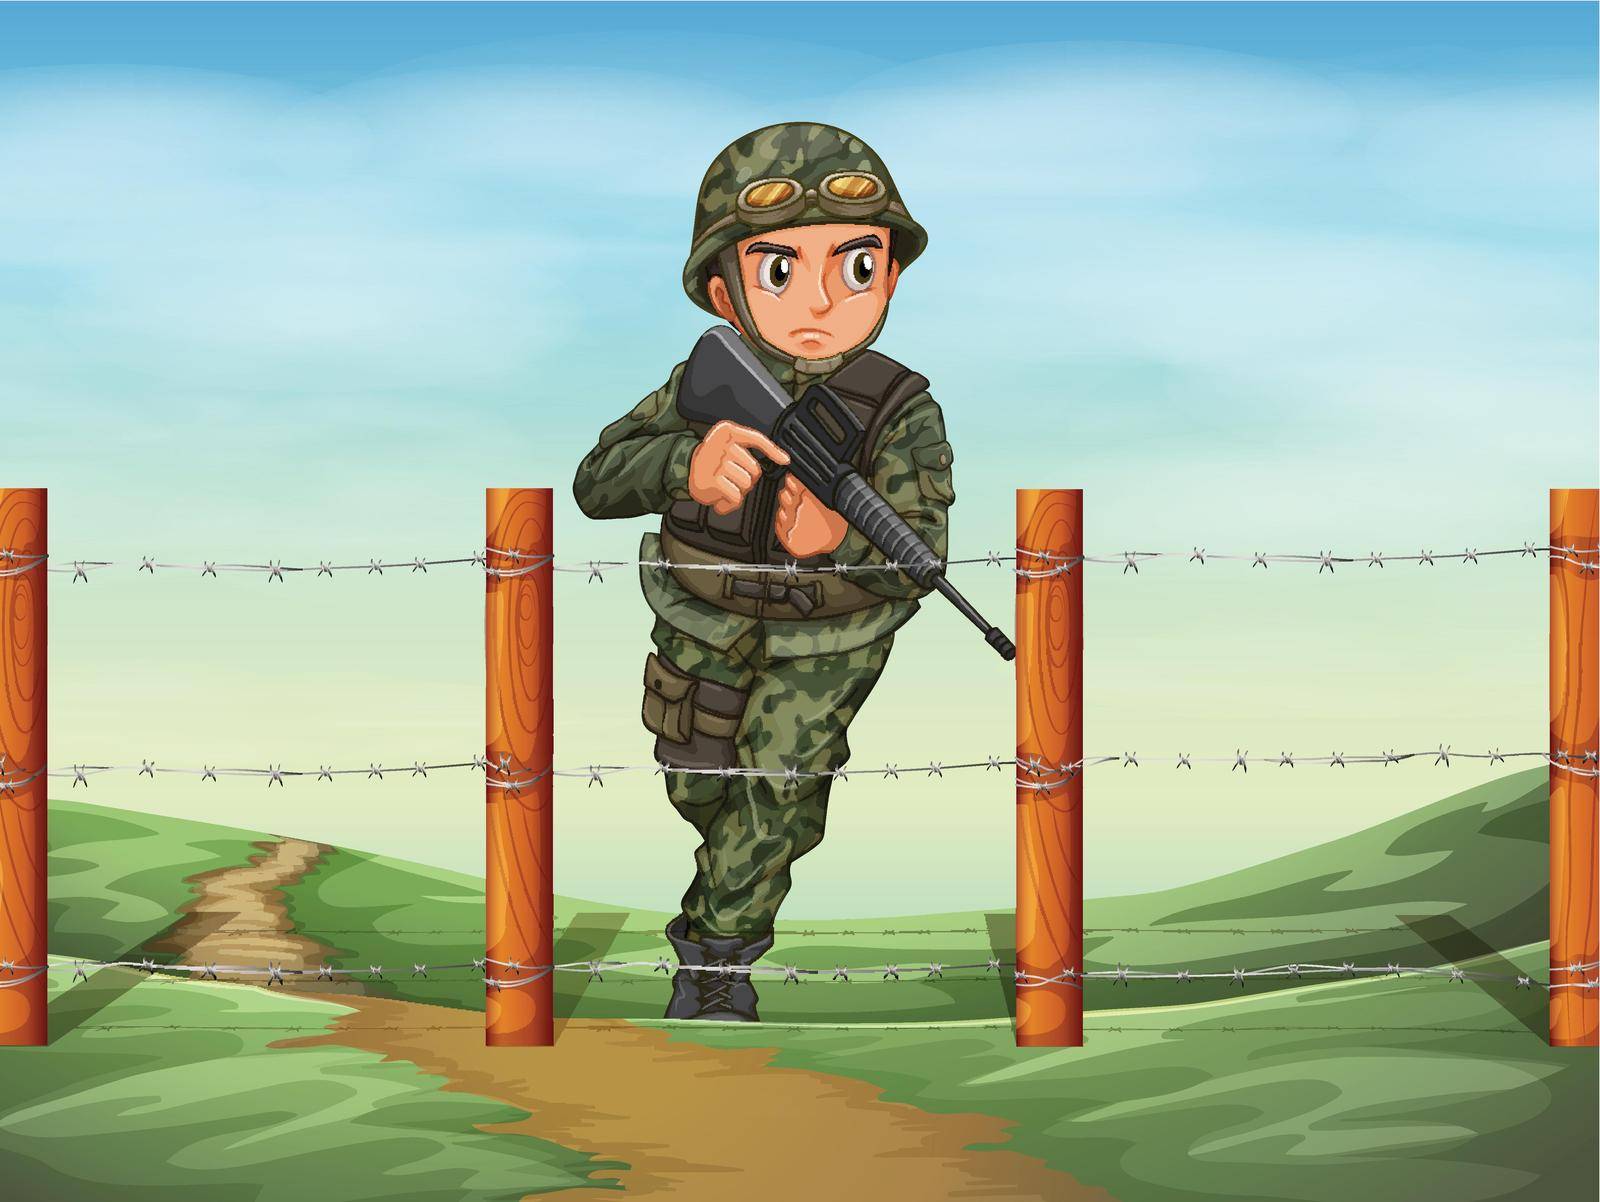 Illustration of a brave soldier